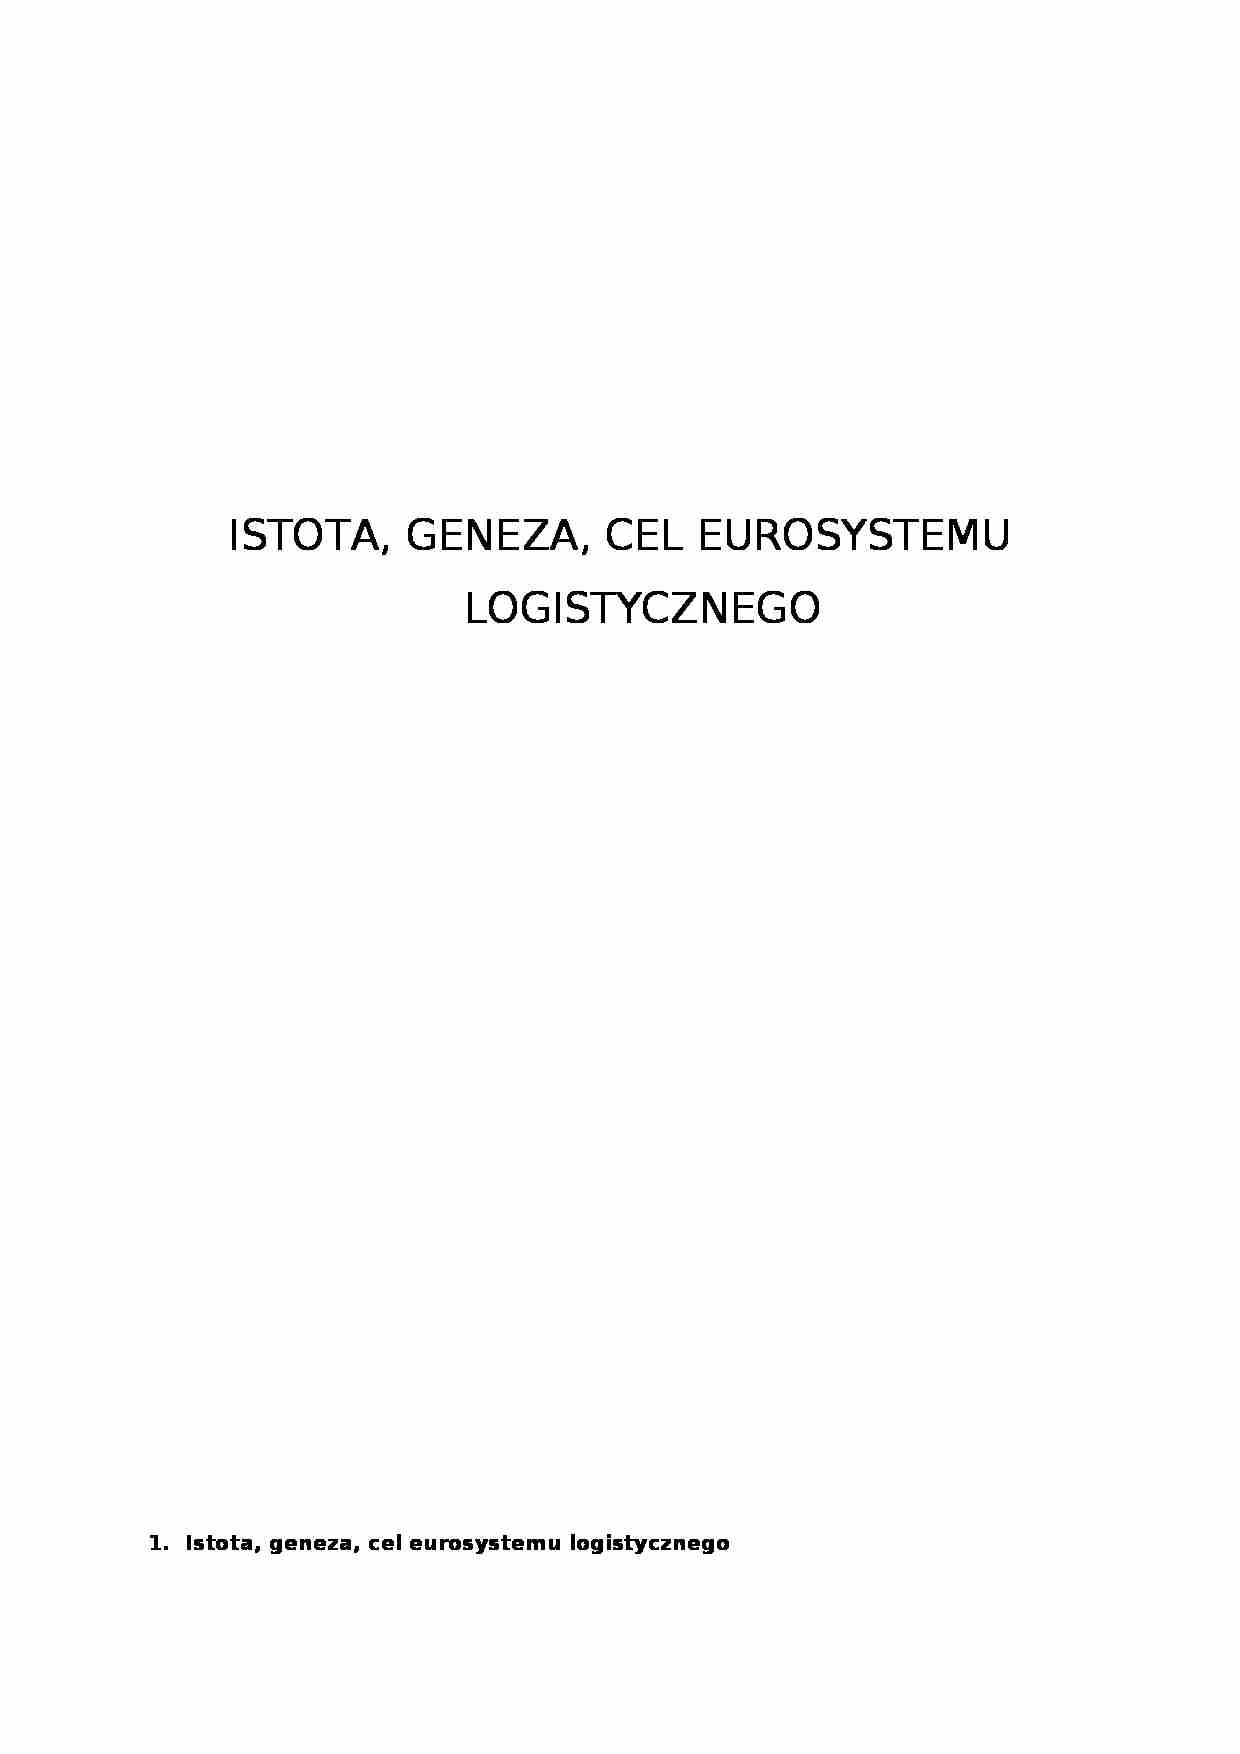 Eurosystem logistyczny - funkcja operacyjna - strona 1